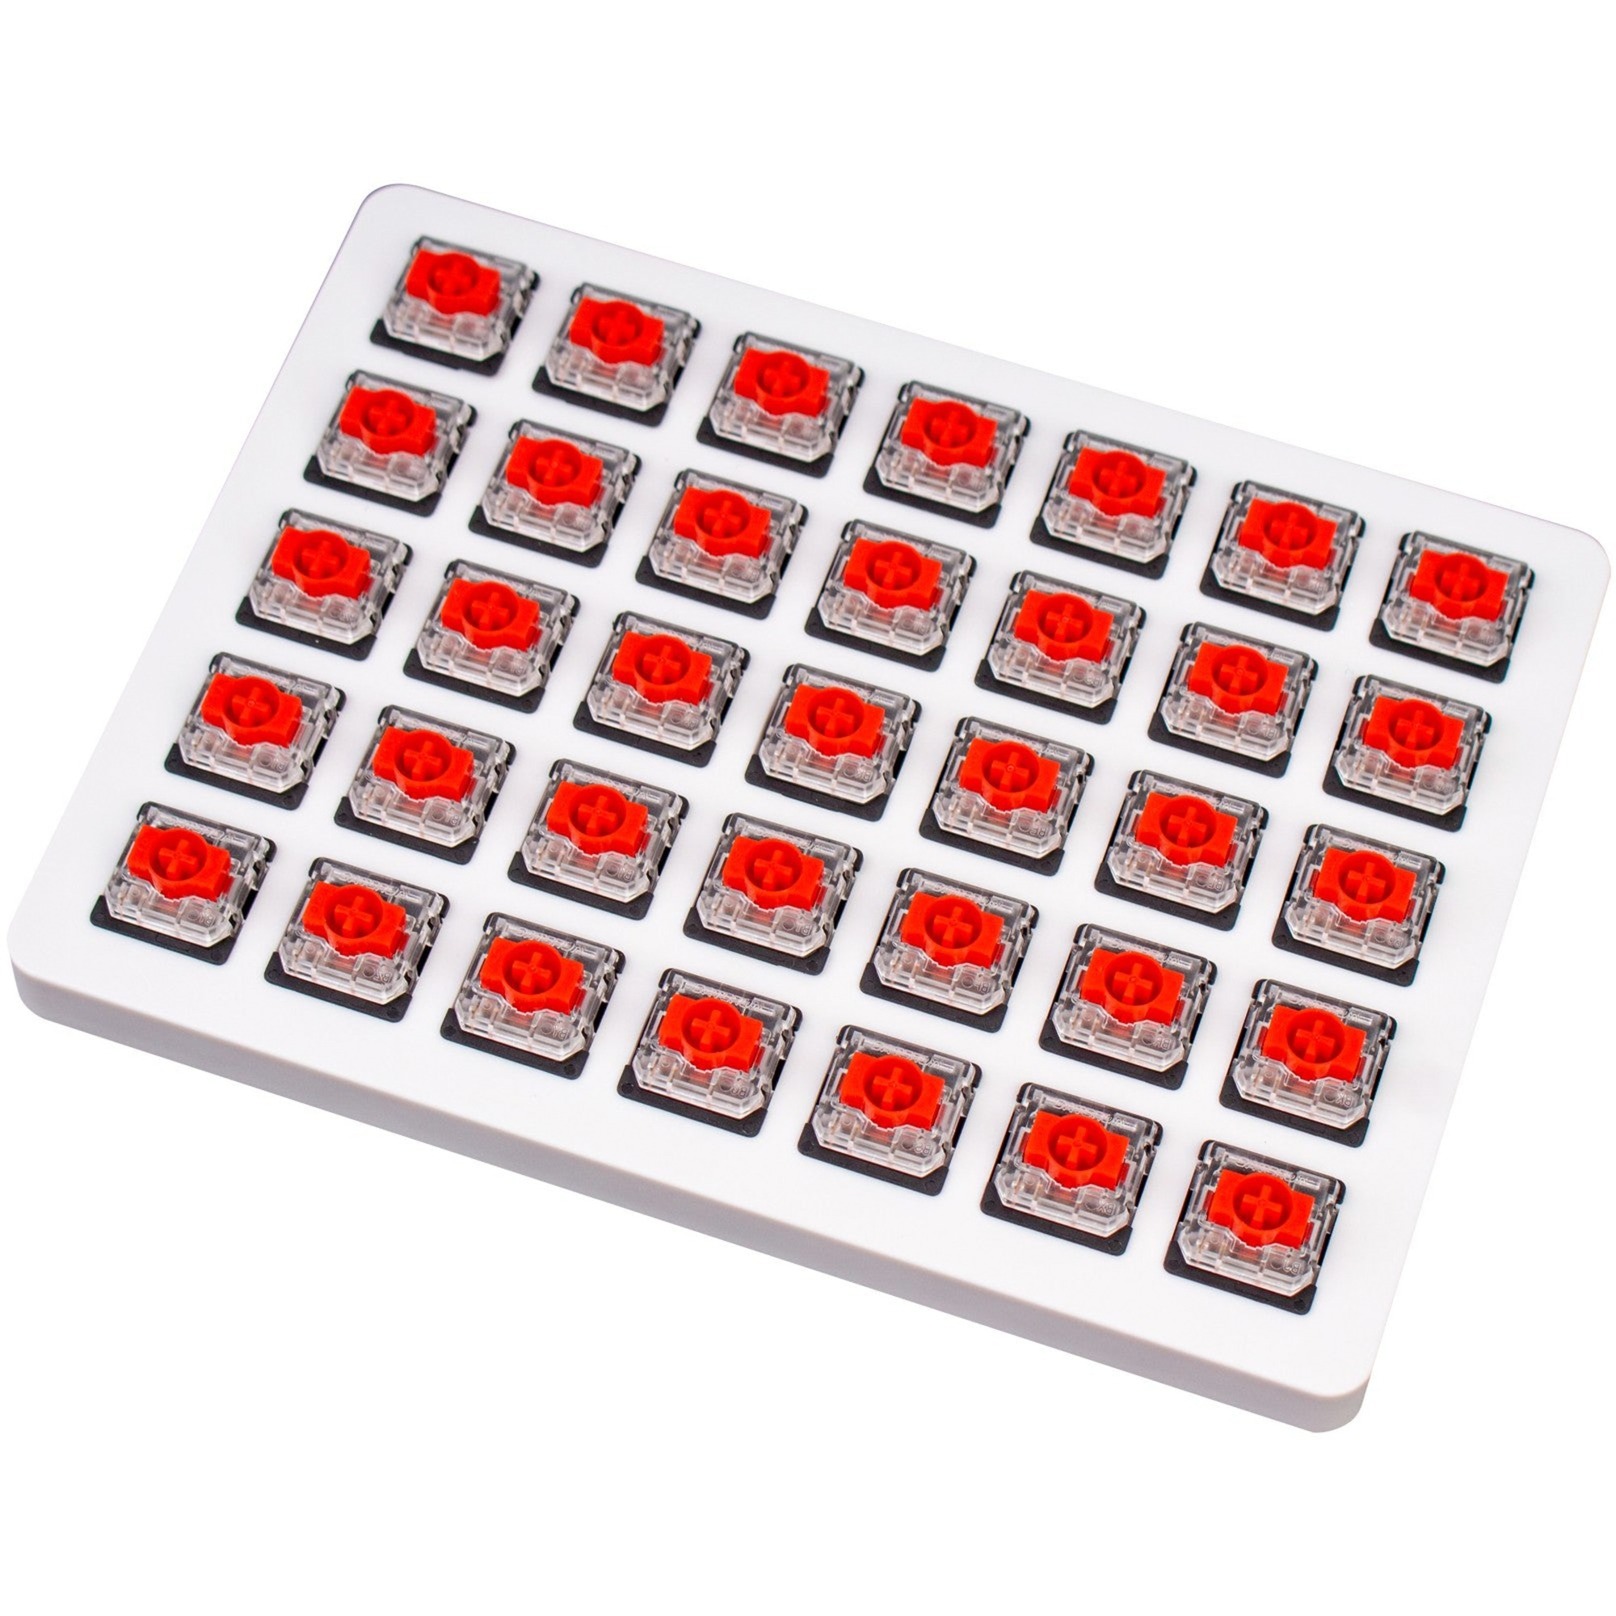 Image of Alternate - Gateron Low Profile Mechanical Red Switch-Set, Tastenschalter online einkaufen bei Alternate